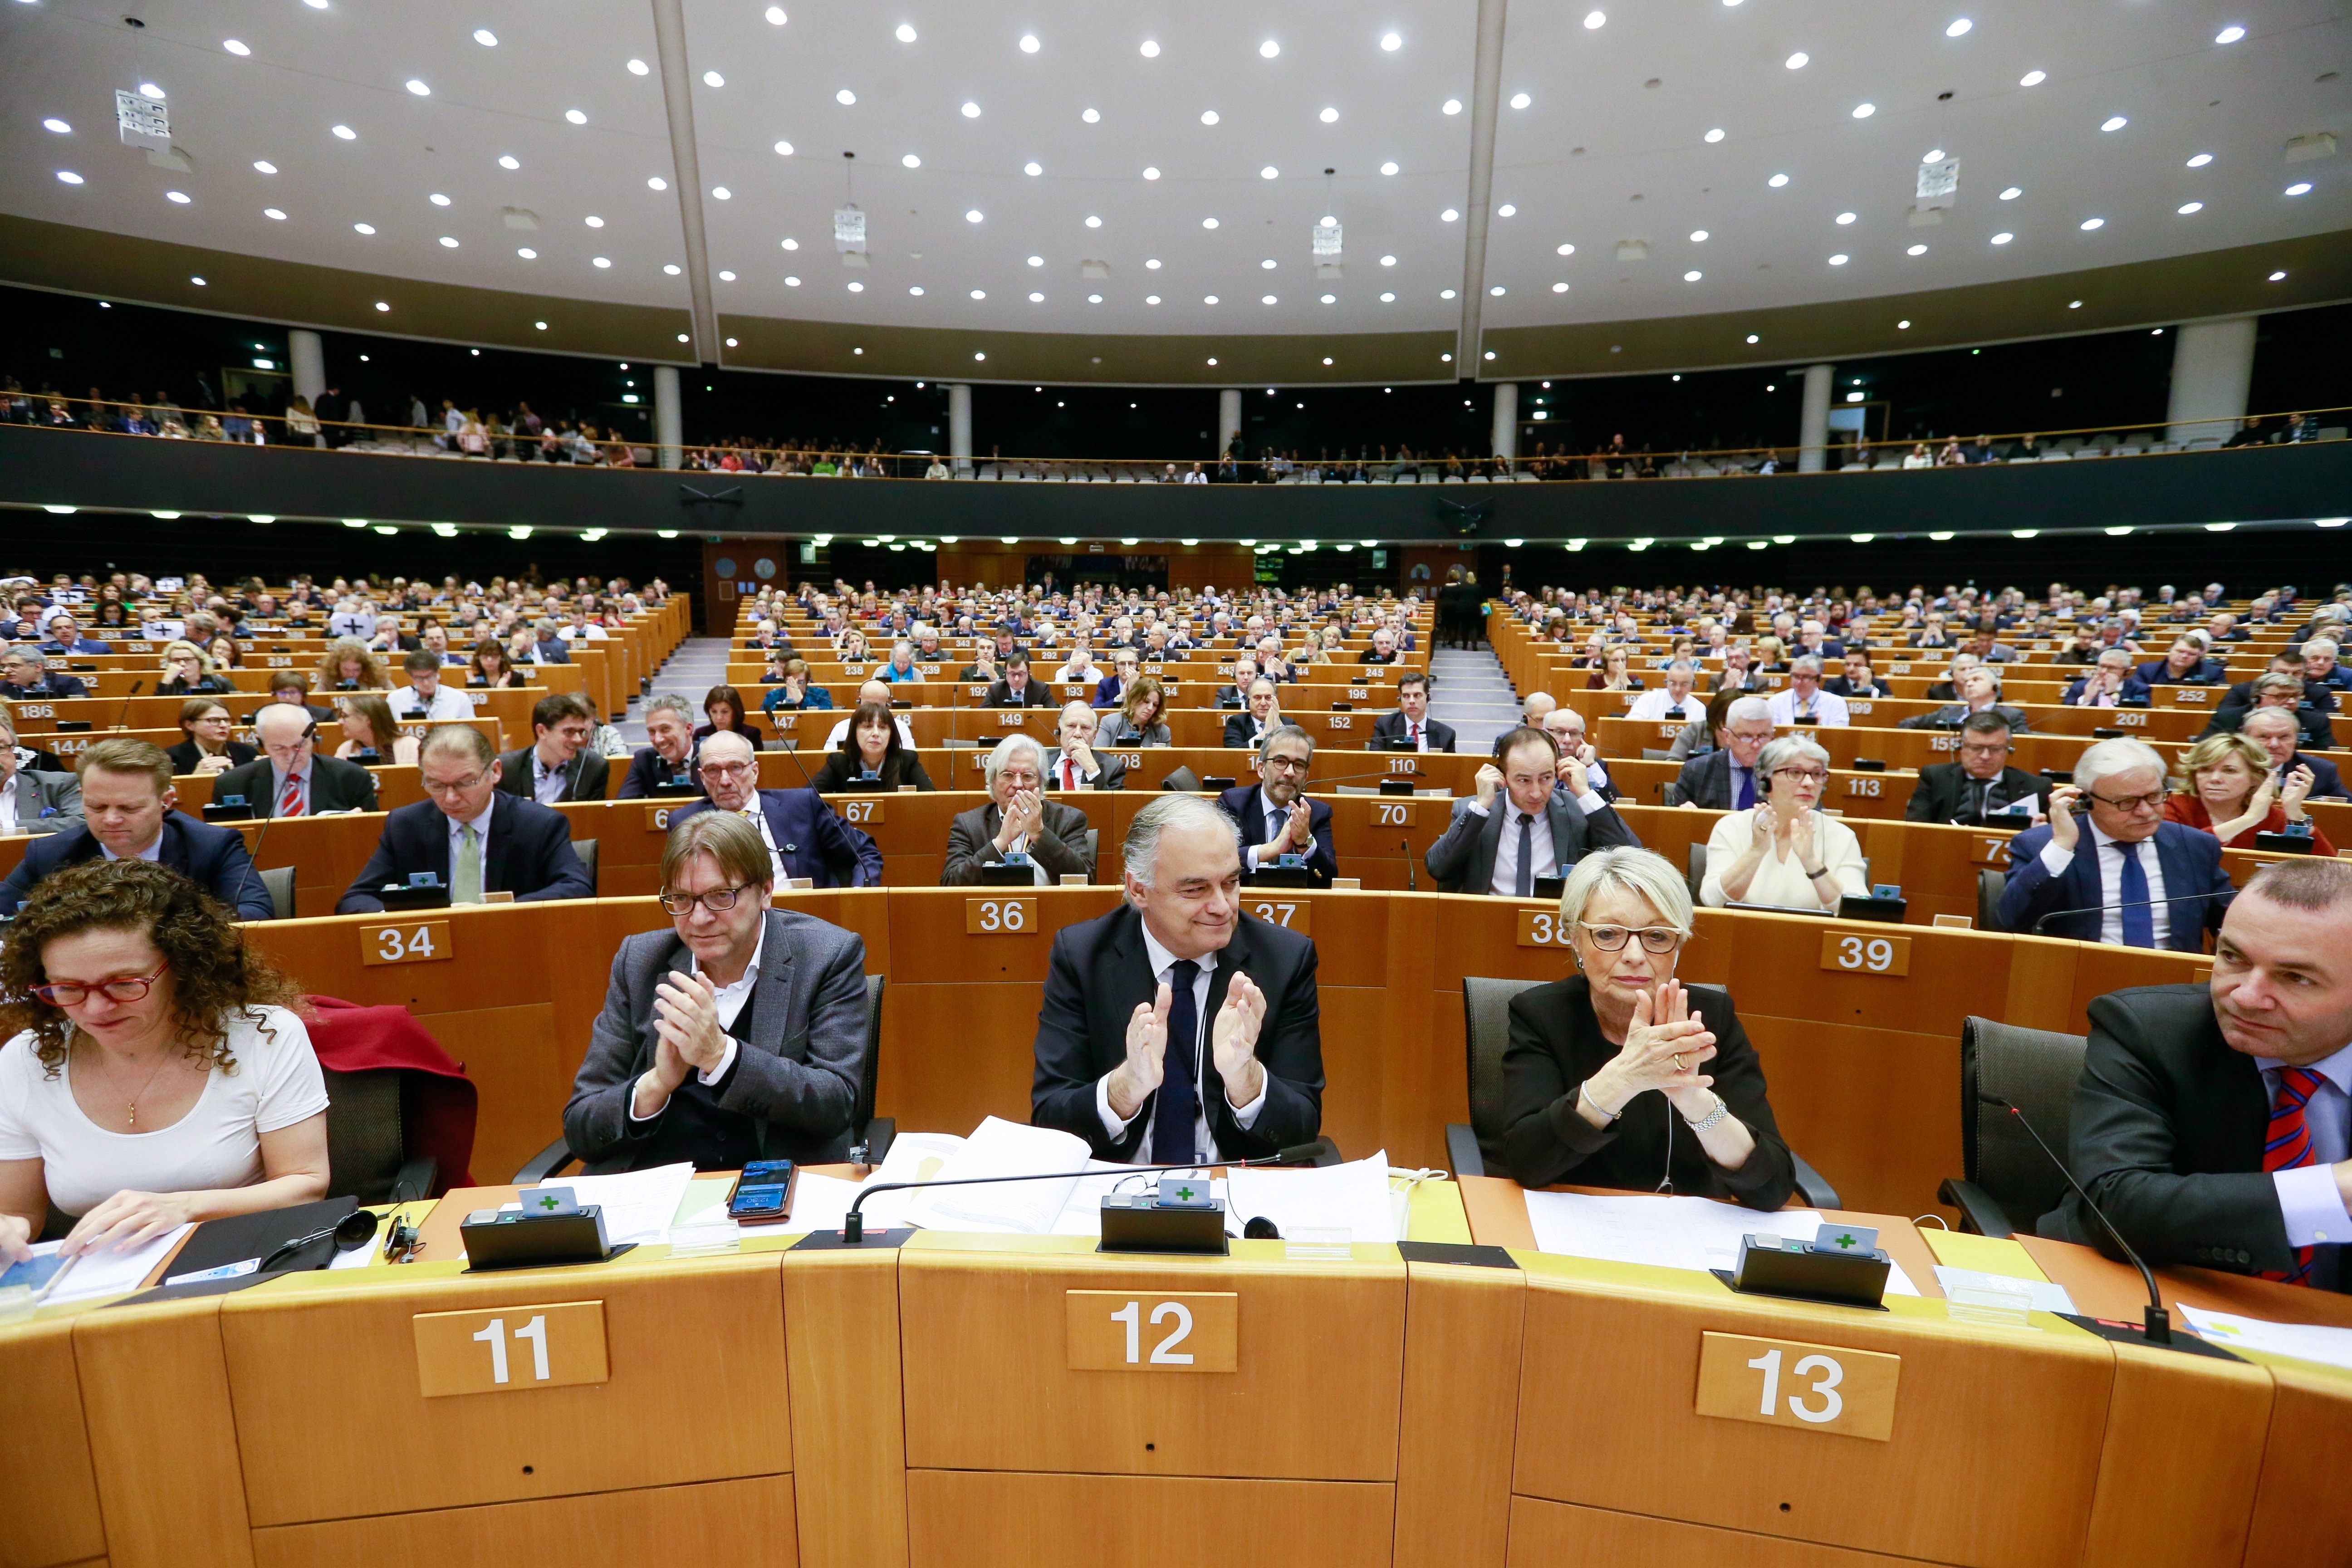 Vista general del hemiciclo durante una sesión del pleno del Parlamento Europeo. (Foto Prensa Libre: EFE)